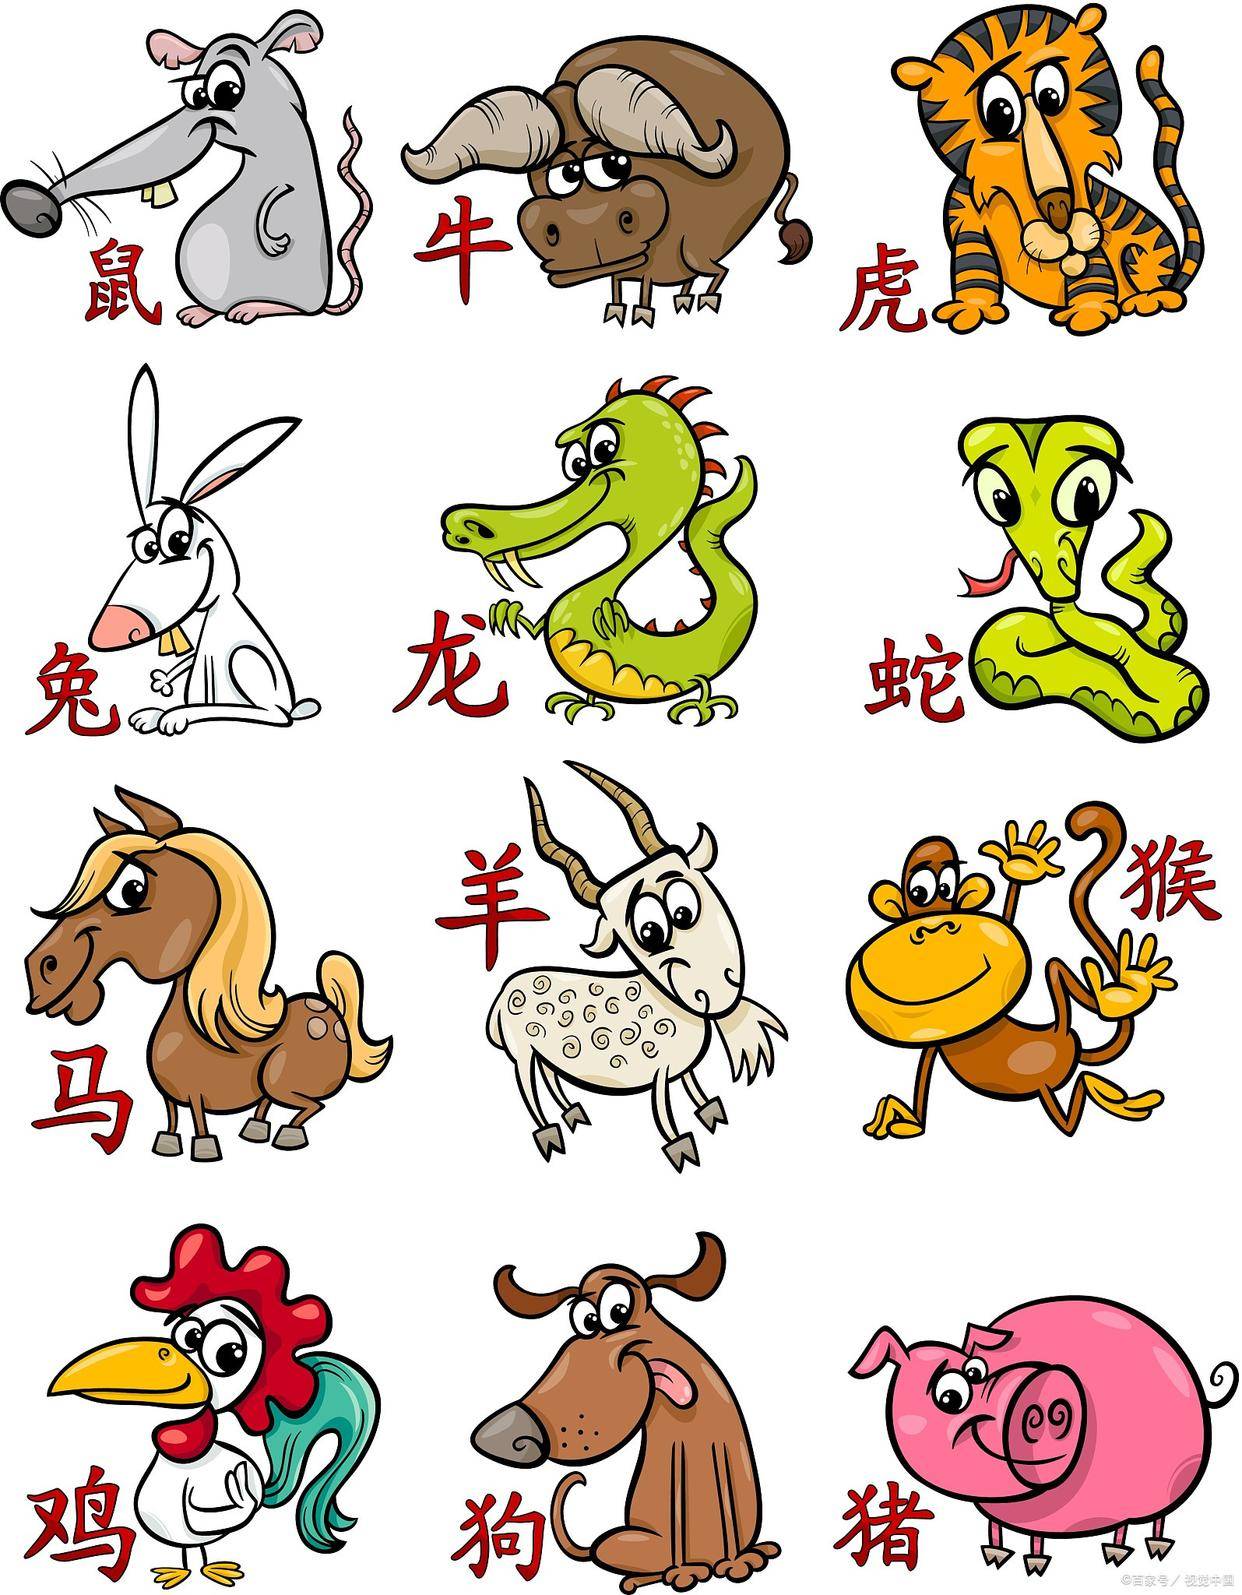 中国传统文化——“十二生肖”